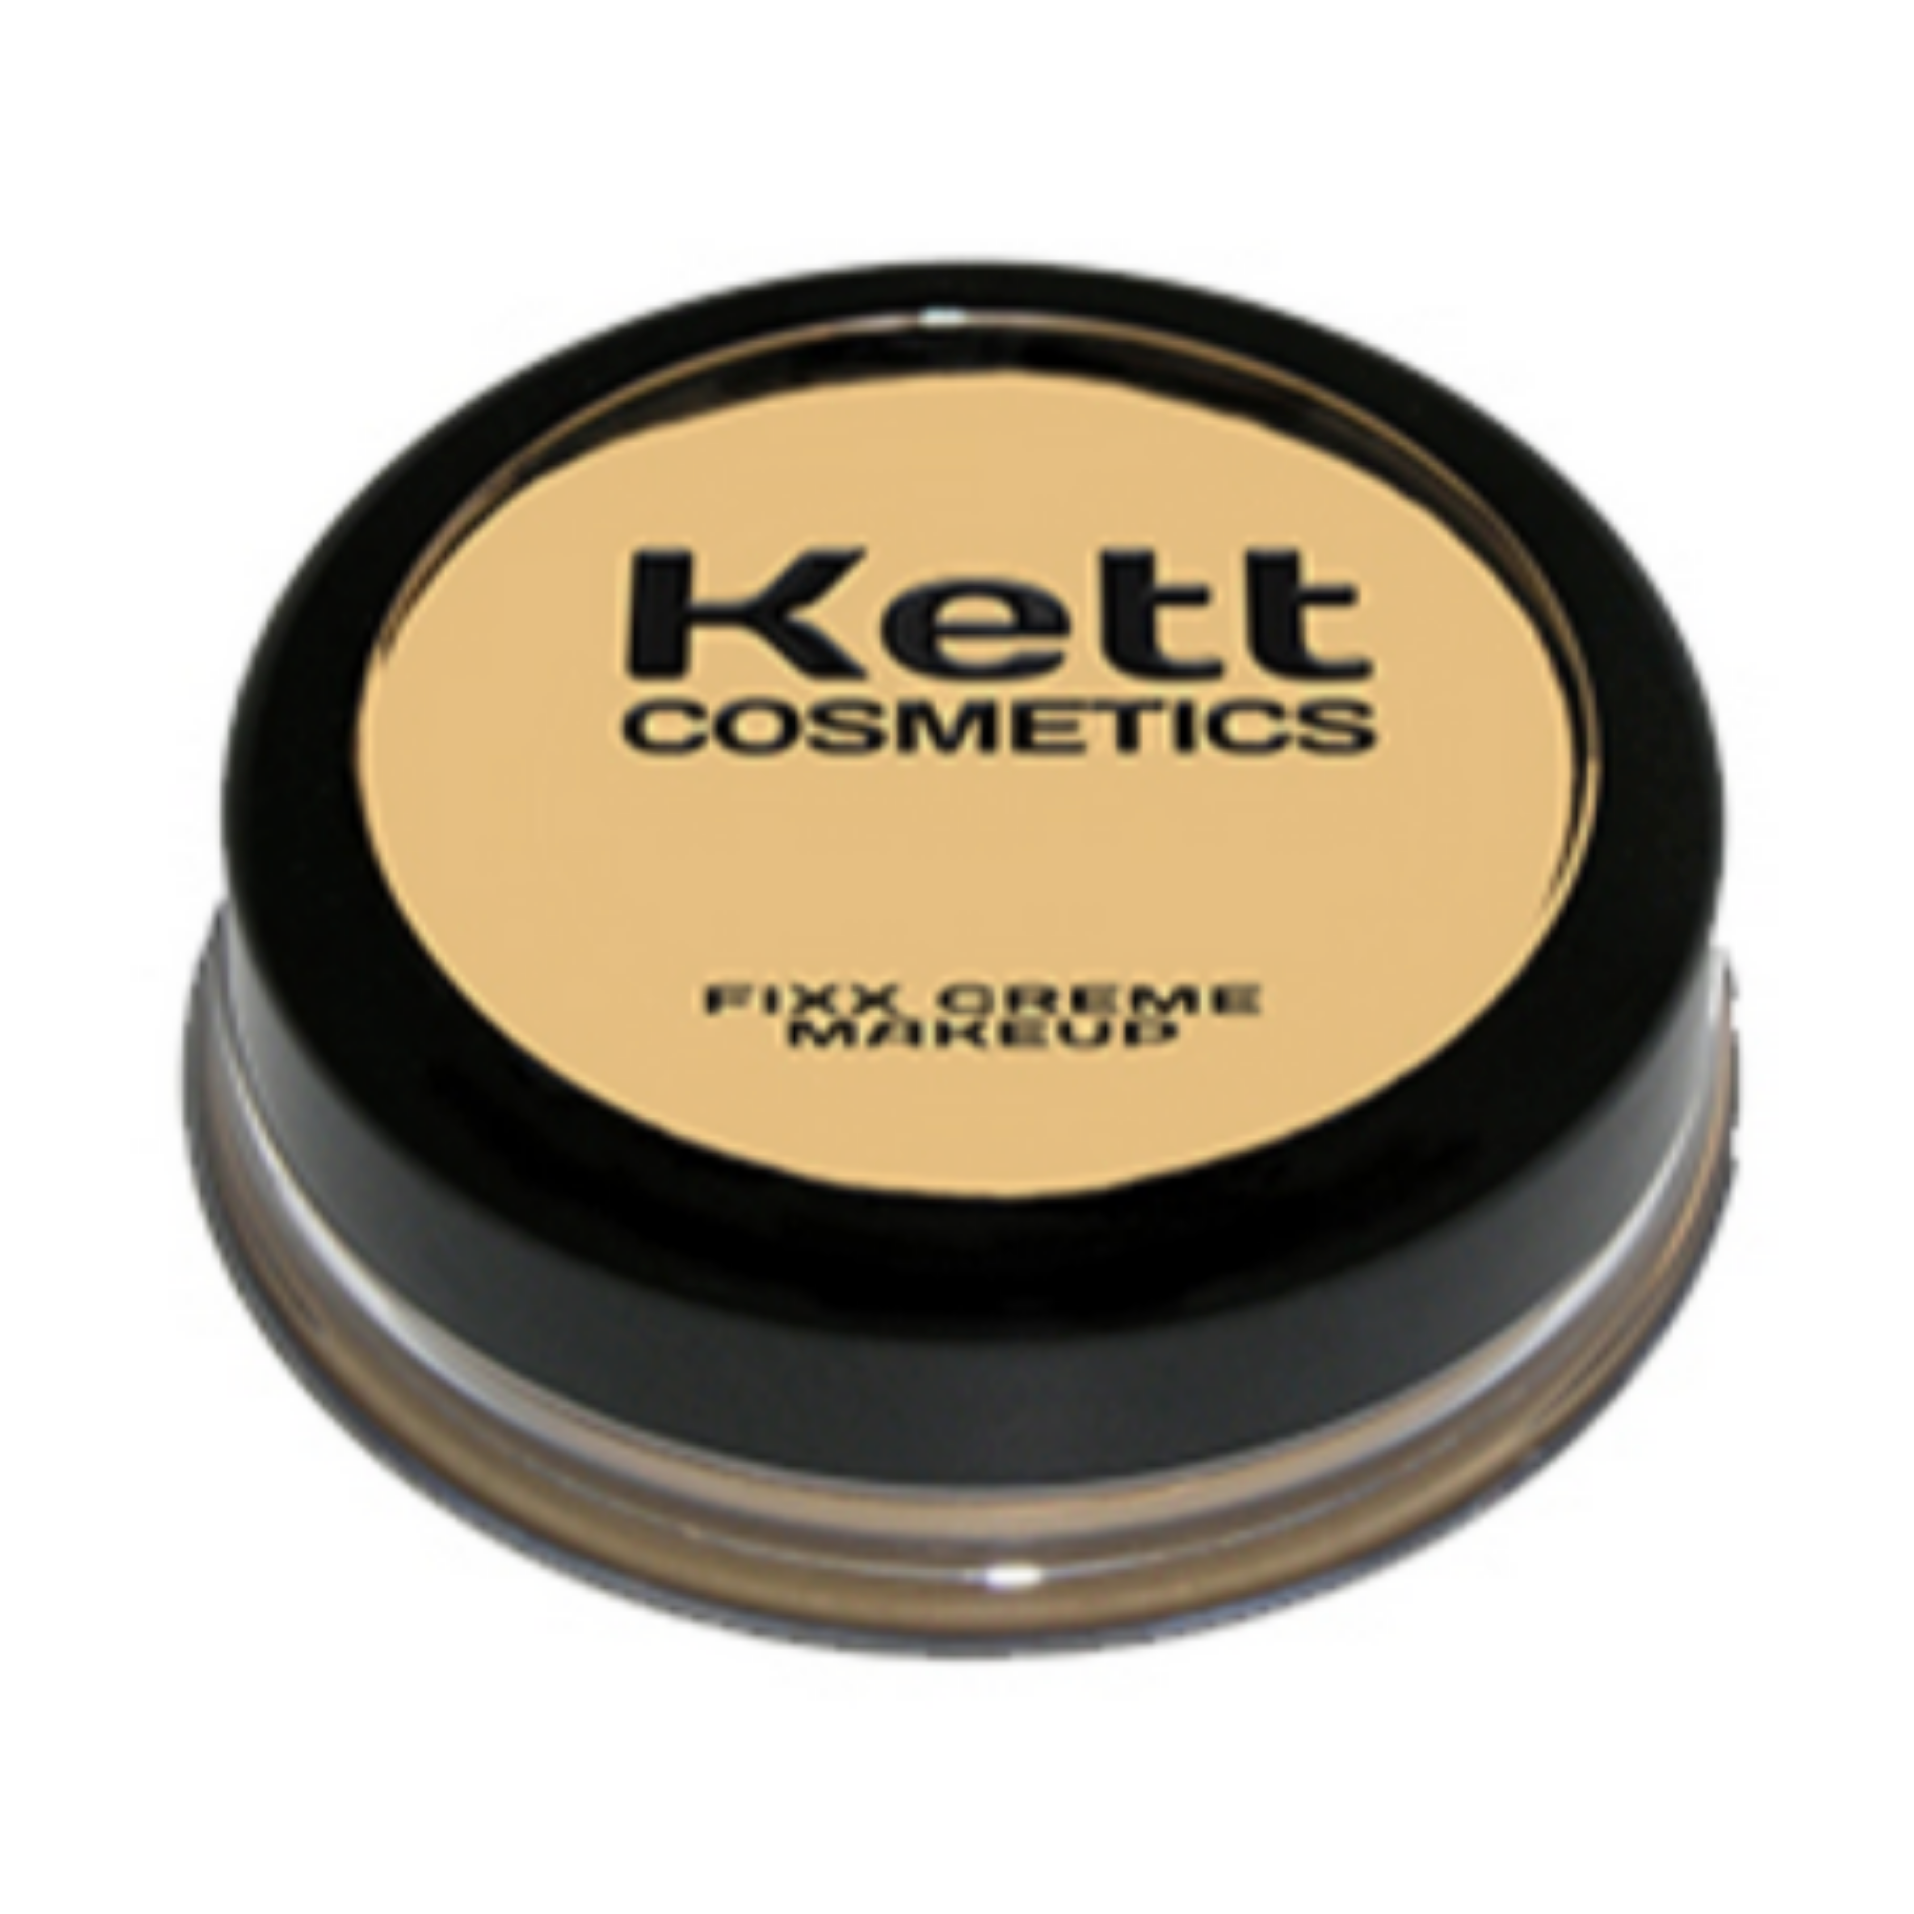 KETT COSMETICS Fixx Creme Makeup Compact